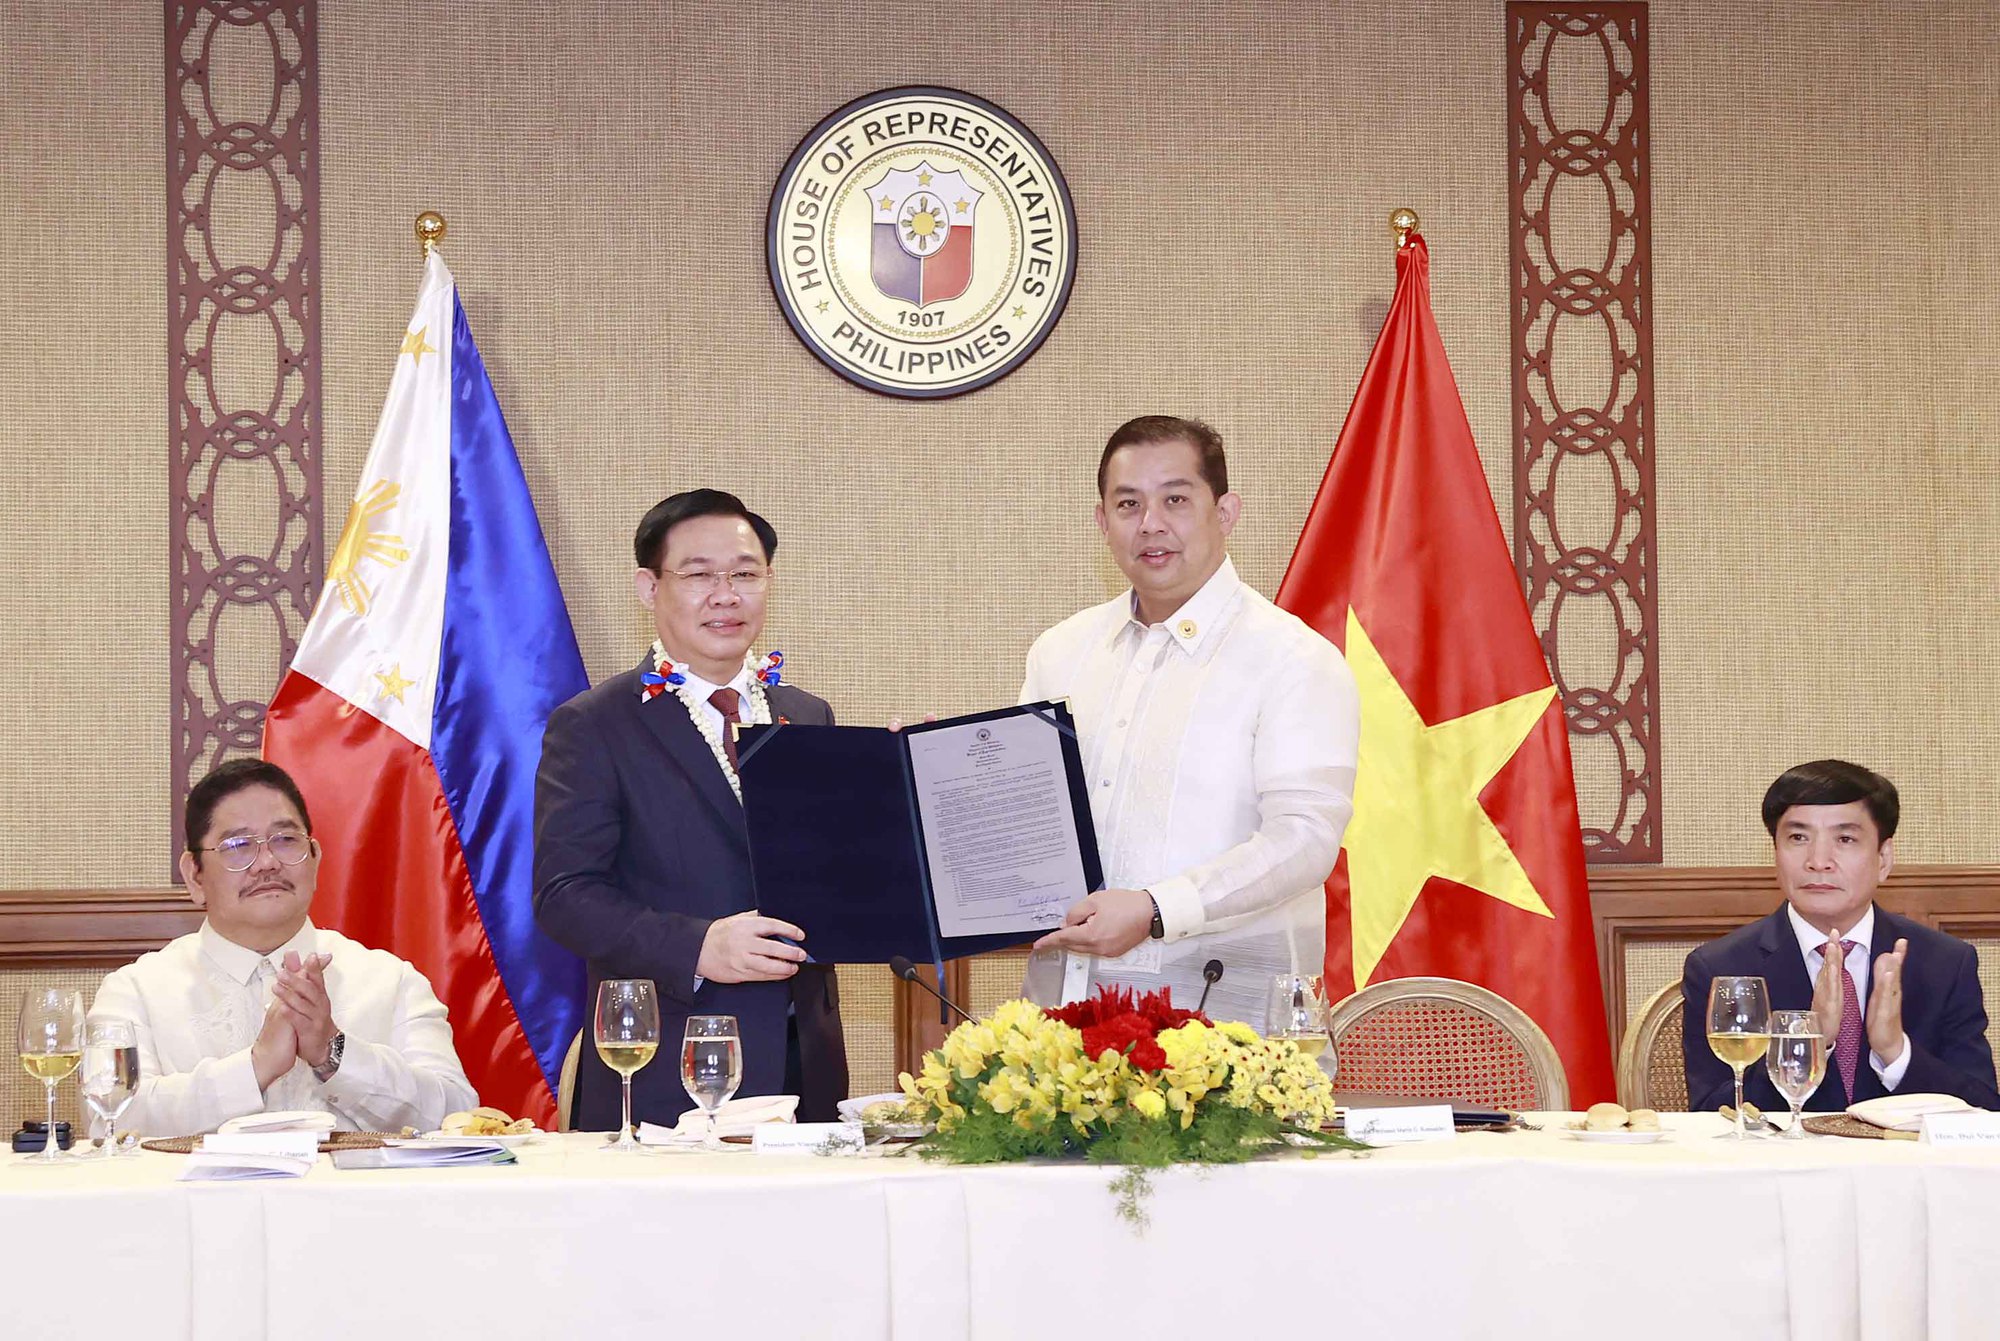 Quan hệ Việt Nam-Philippines hiện tại đang rất tốt đẹp và ngày càng thắtight. Chúng tôi rất hào hứng với sự tiến bộ đang diễn ra, bức hình này sẽ giúp quý khách thấy được tương lai tươi sáng và hứa hẹn của hai quốc gia.